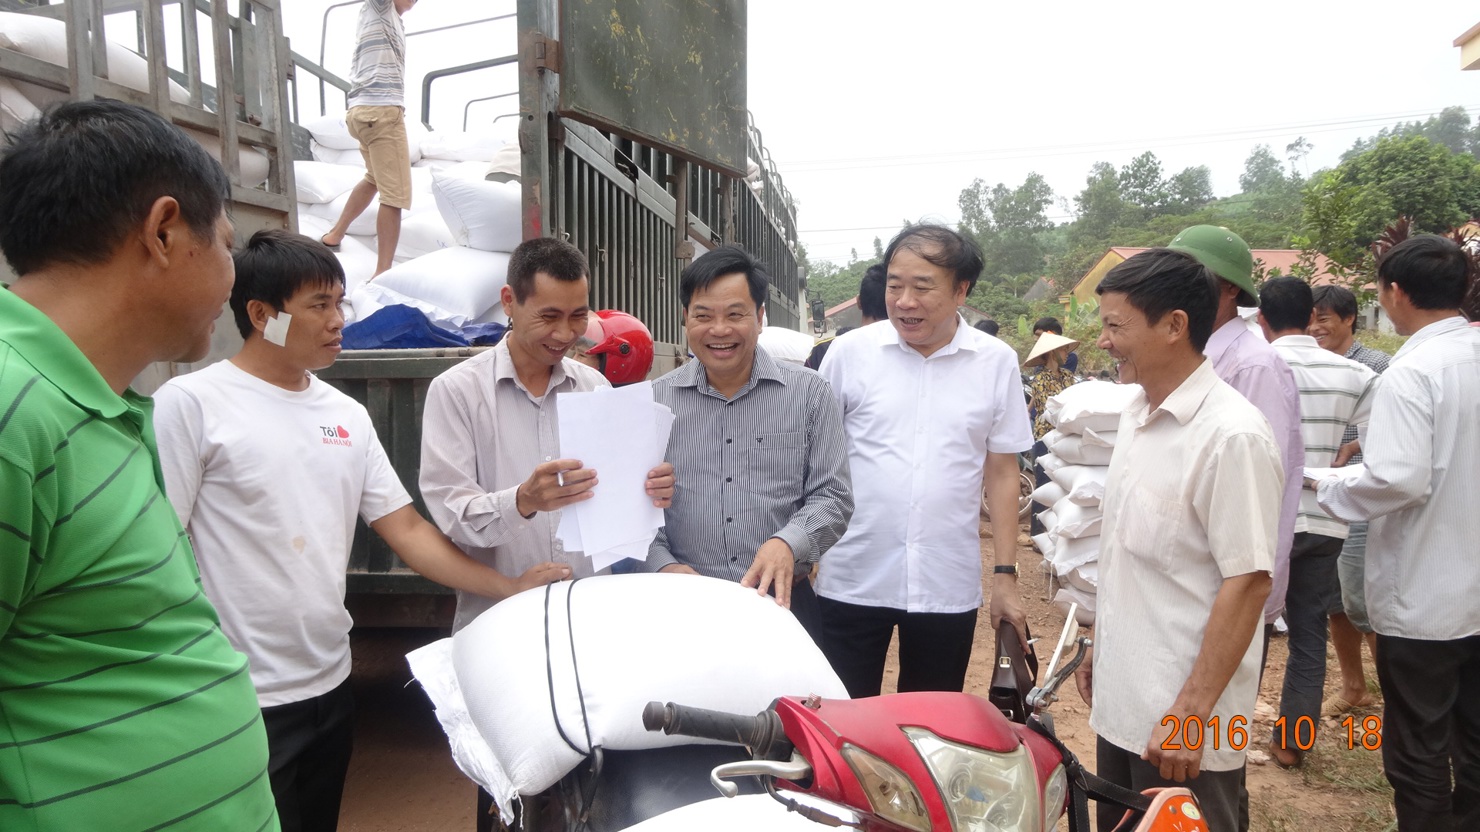 Đoàn công tác của cục DTNN khu vực Hà Bắc cùng đại diện huyện Lục (Bắc Giang) trực tiếp kiểm tra chất lượng gạo hỗ trợ đồng bào dân tộc thiểu số trên địa bàn huyện.